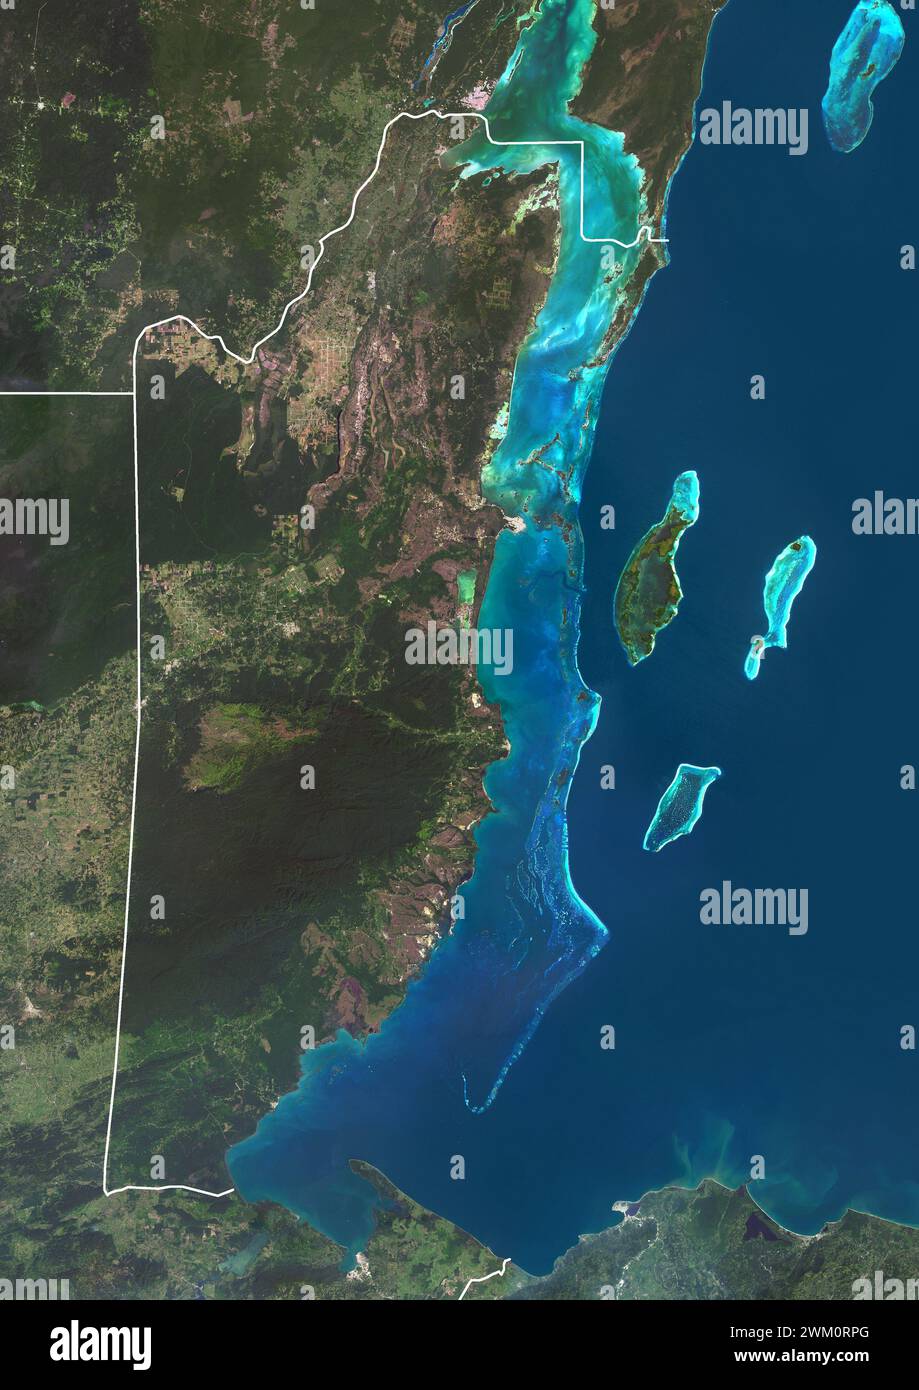 Immagine satellitare a colori del Belize e dei paesi vicini, con confini. La barriera corallina del Belize corre per circa 190 miglia (300 km) lungo la costa caraibica del Belize. Foto Stock